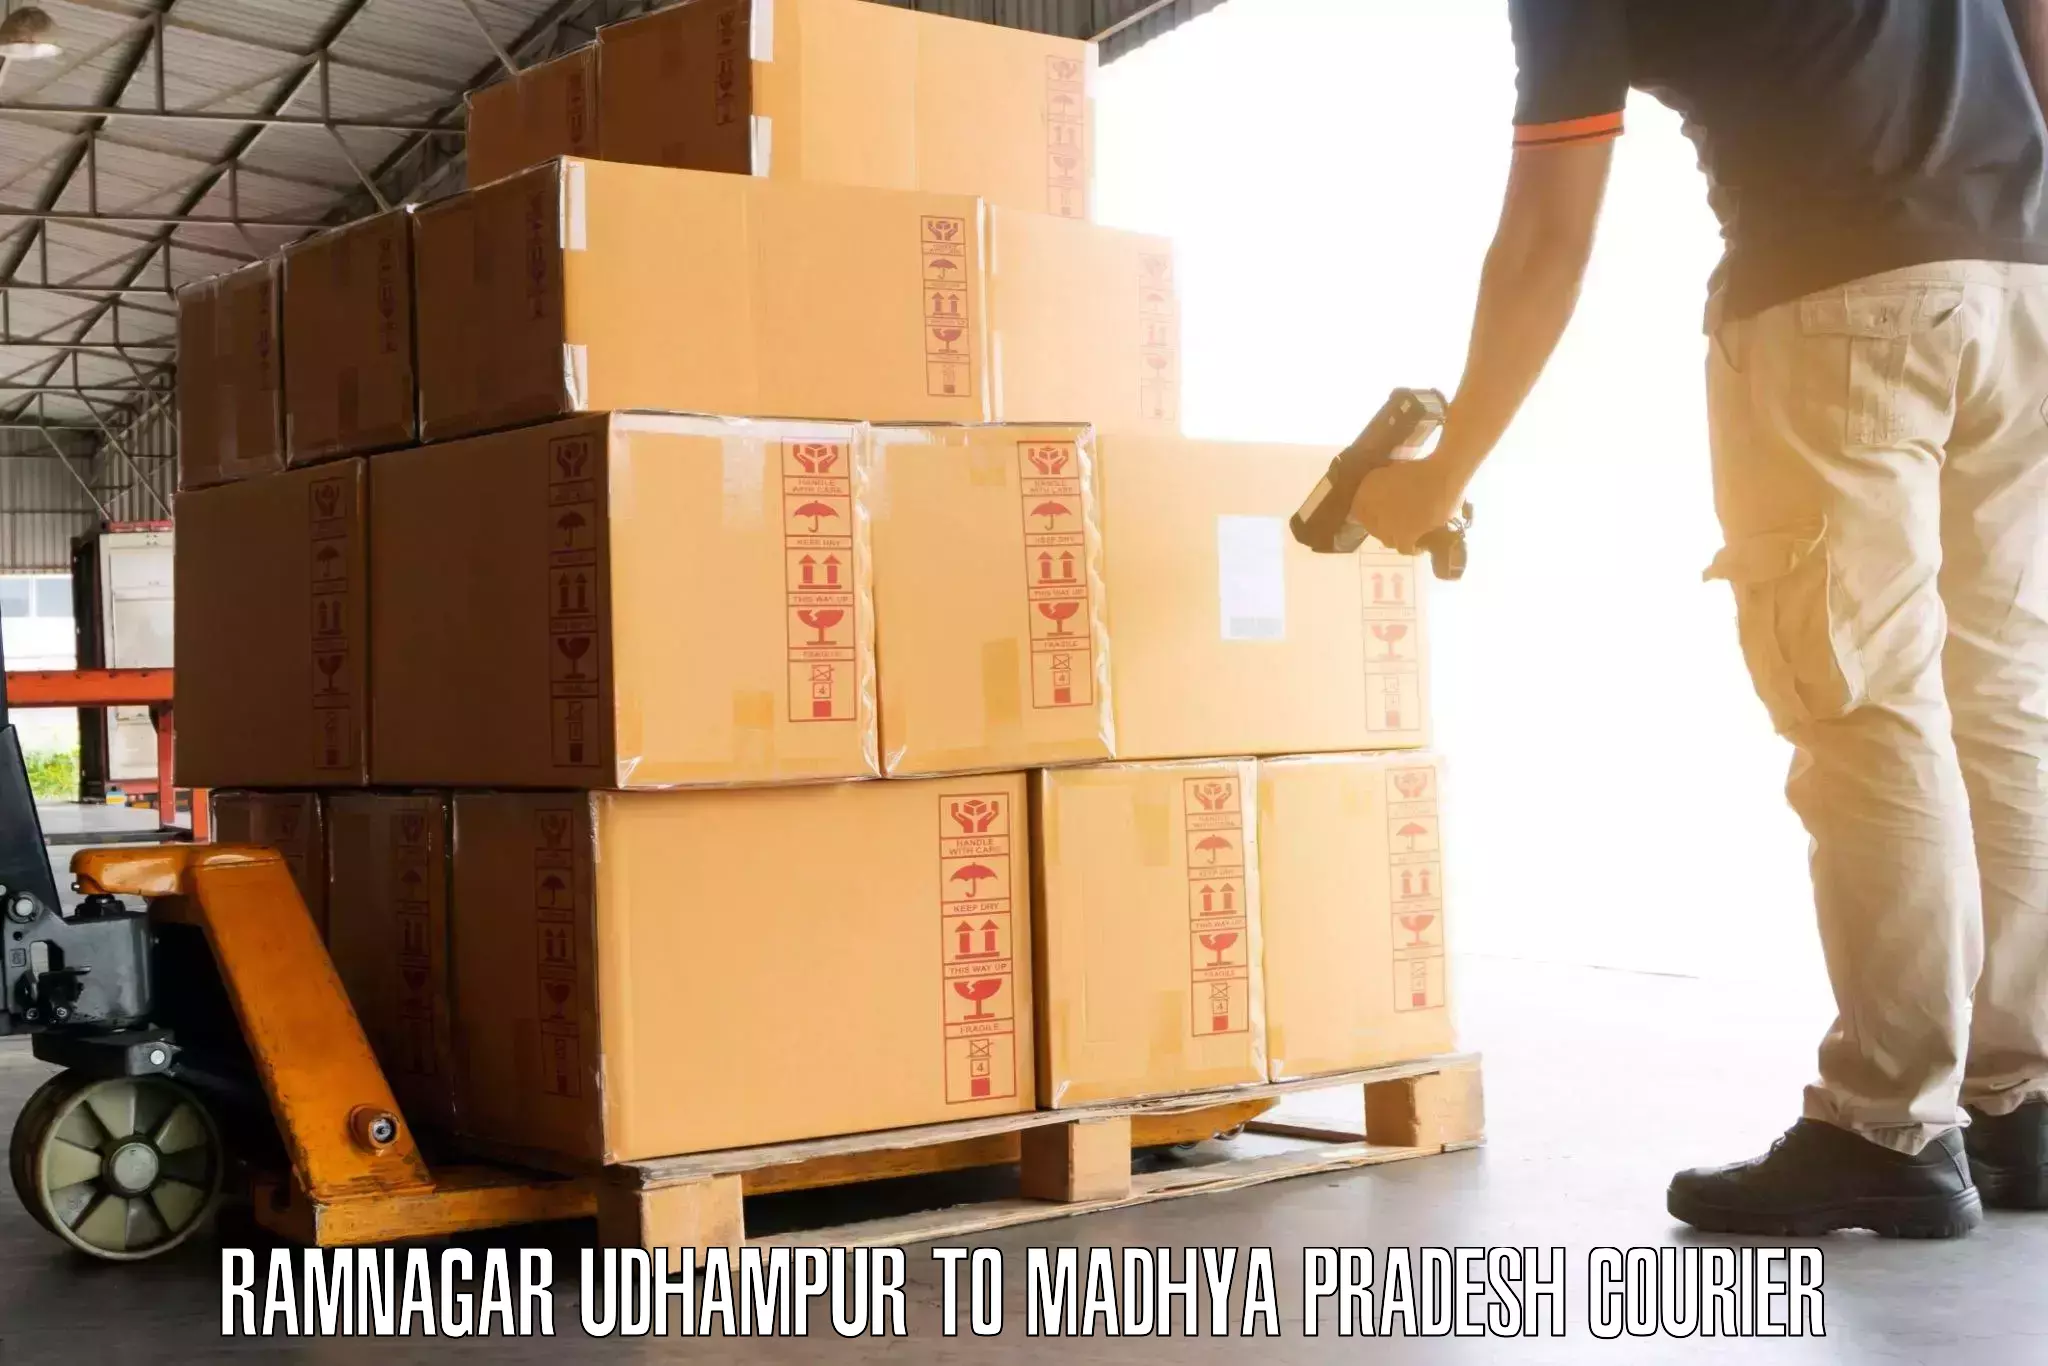 Baggage transport cost Ramnagar Udhampur to Agar